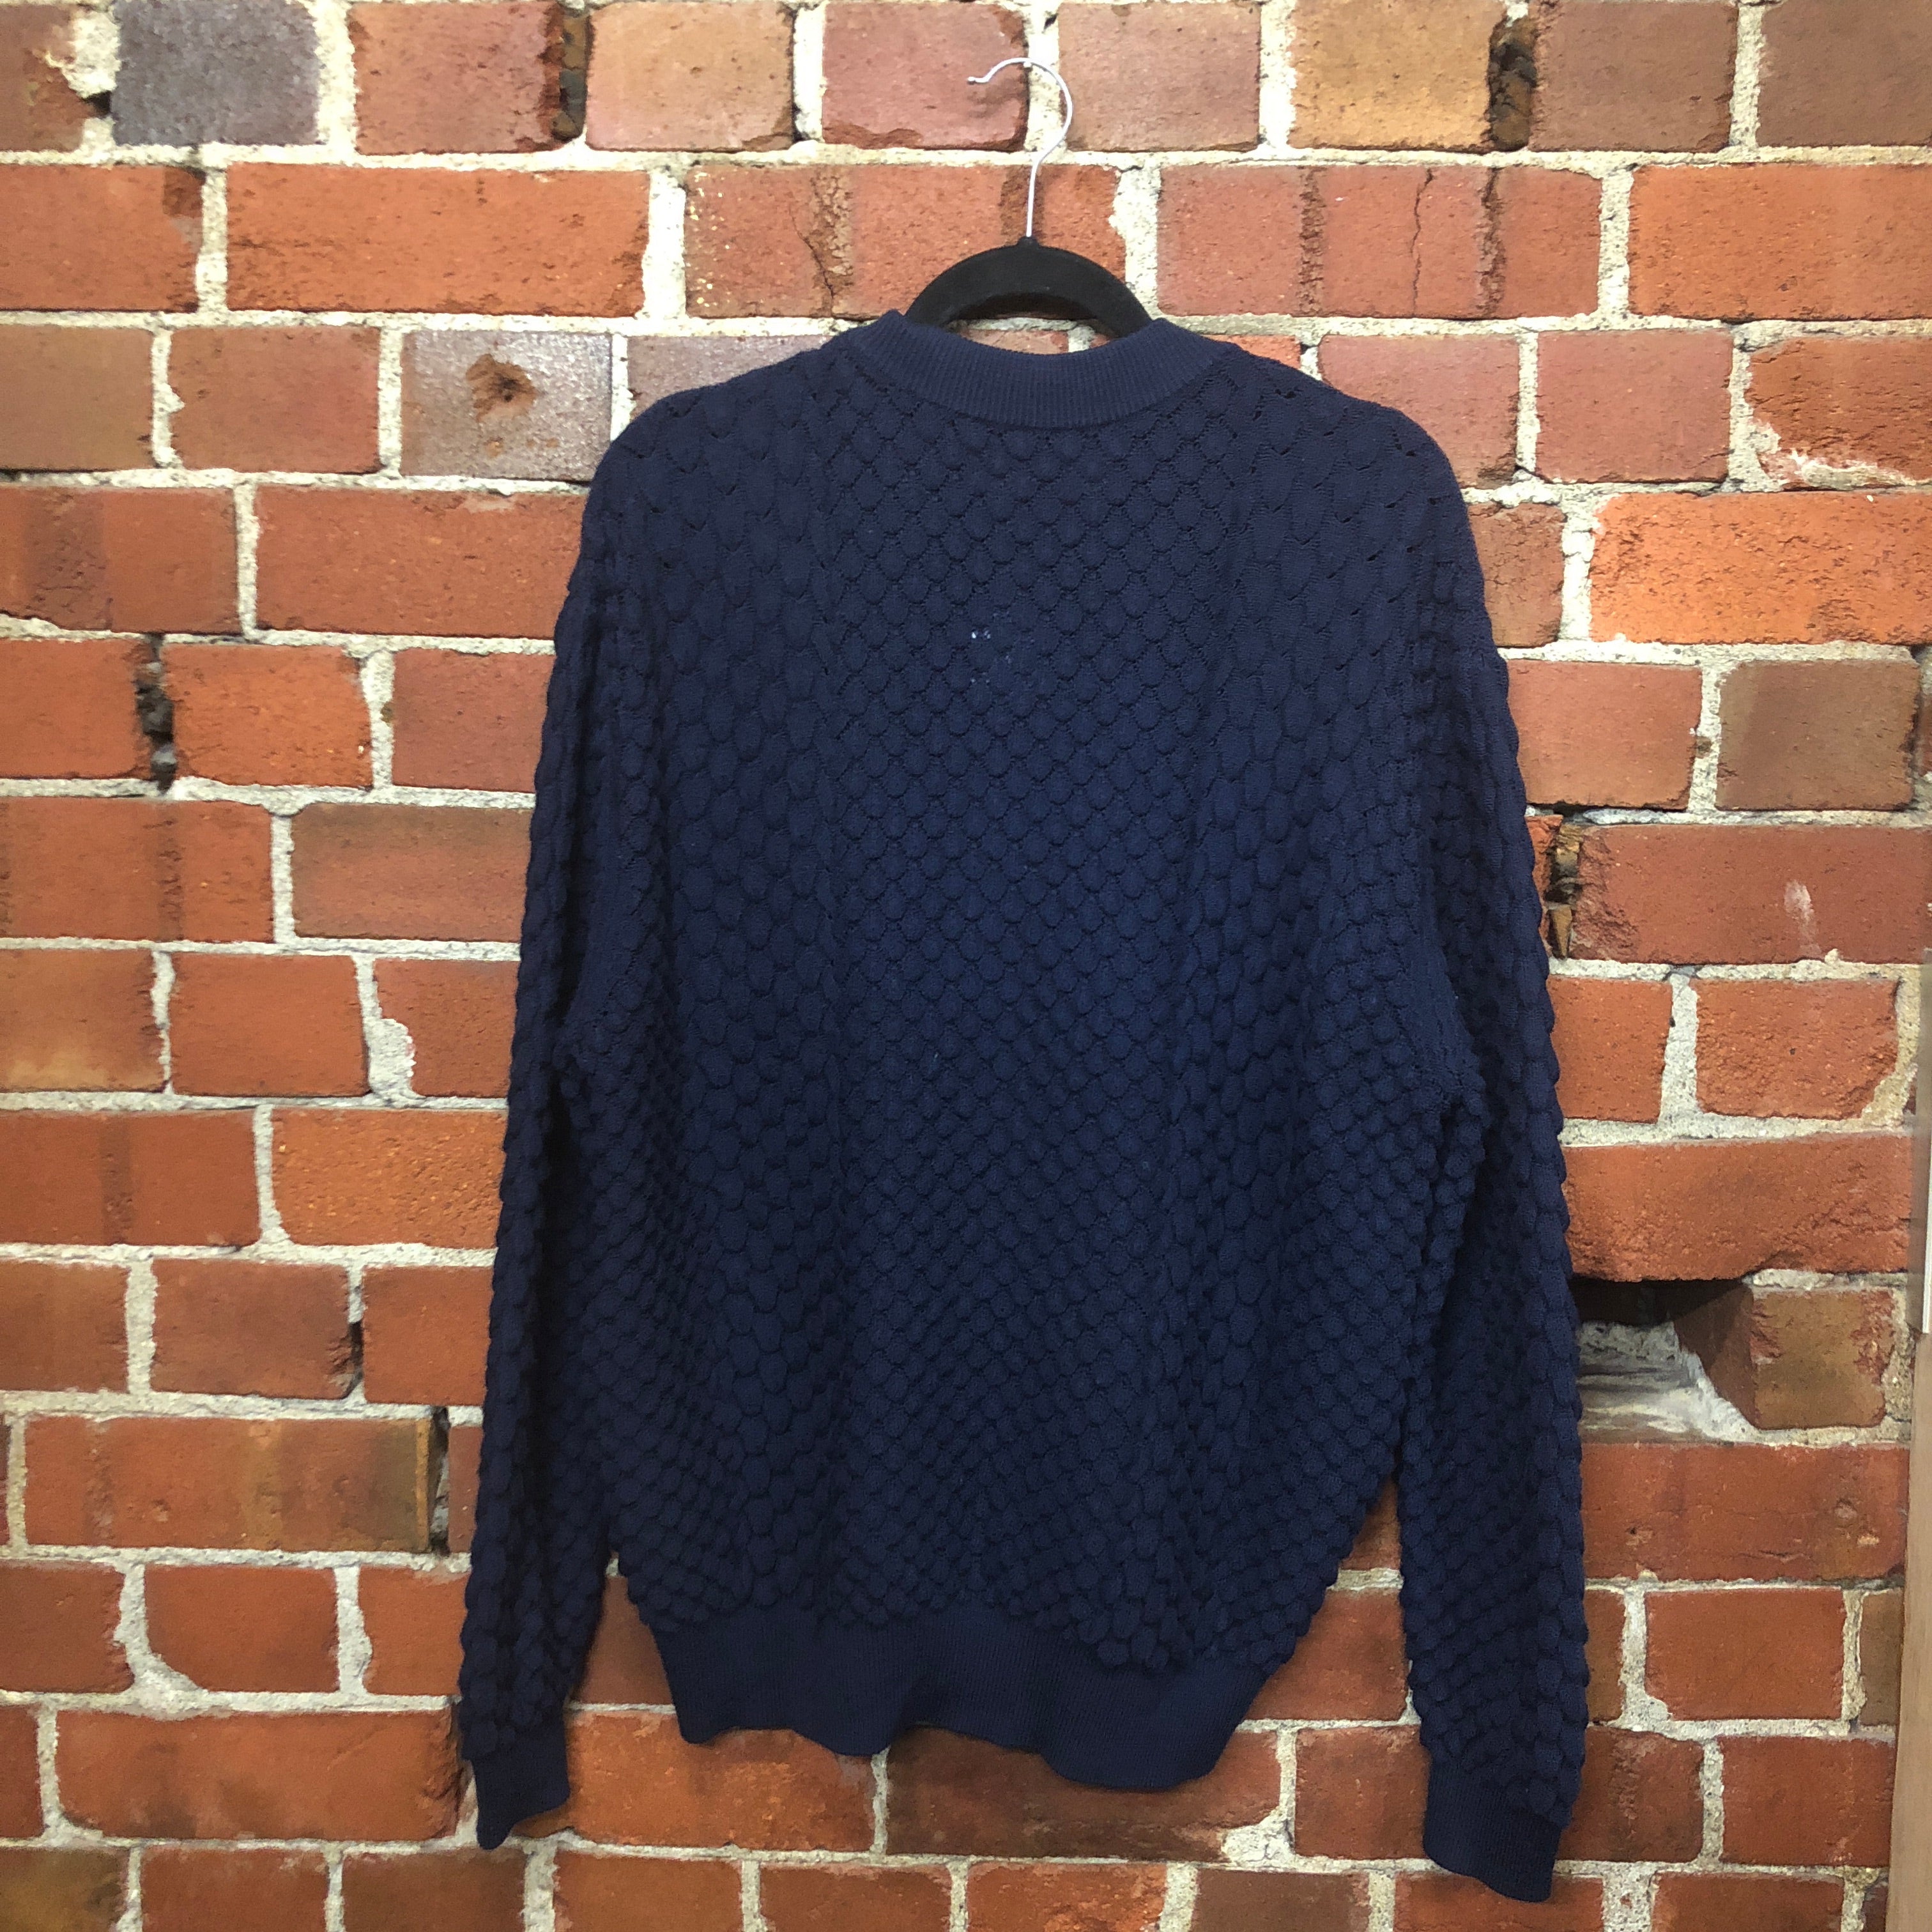 1947 NZ designer merino knit jumper